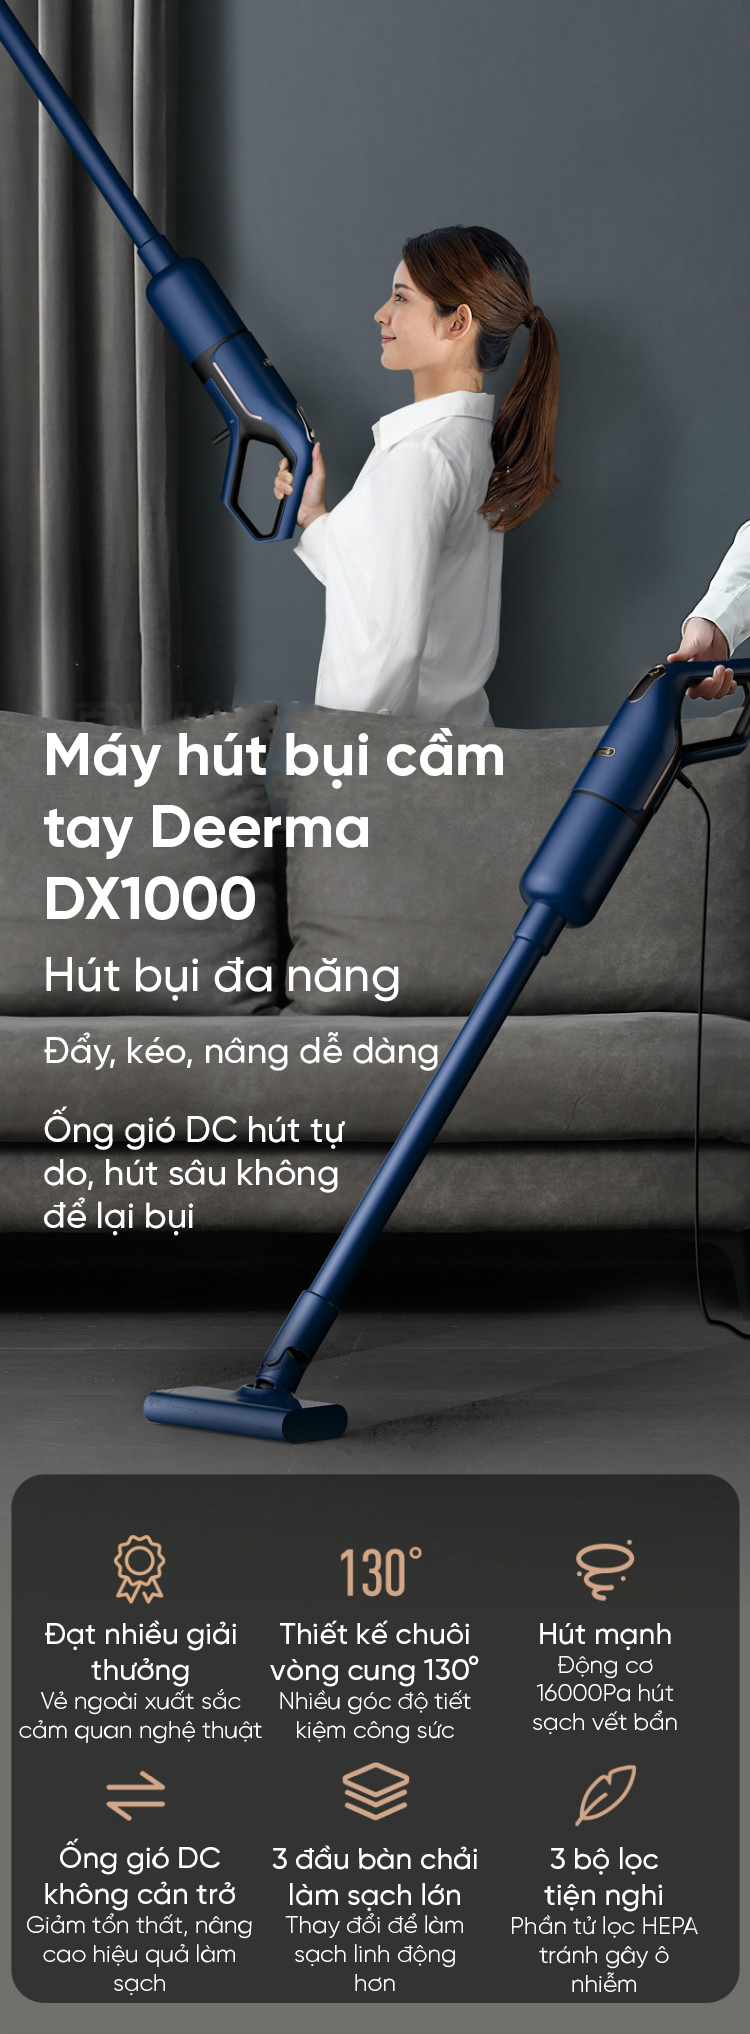 Máy hút bụi cầm tay Deerma DX1000